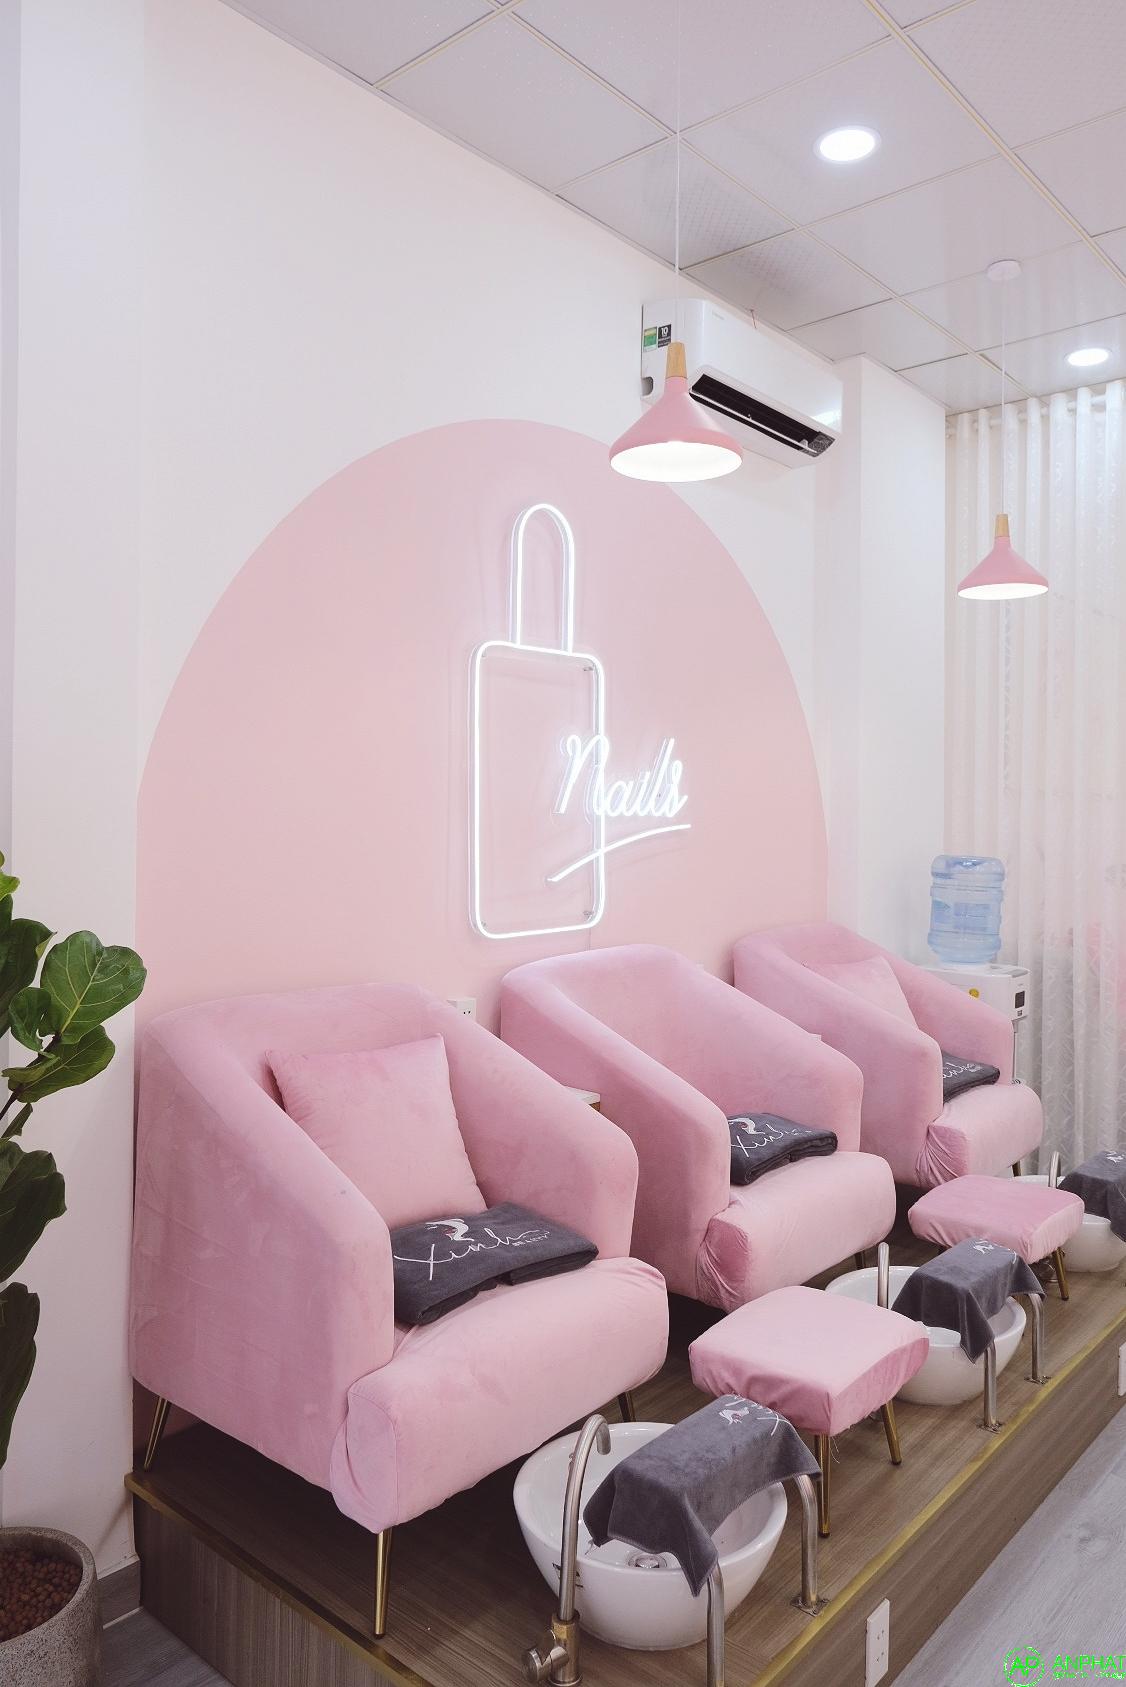 Bảng neon Xinh spa -Trang trí làm bảng hiệu quảng cáo Spa và nail